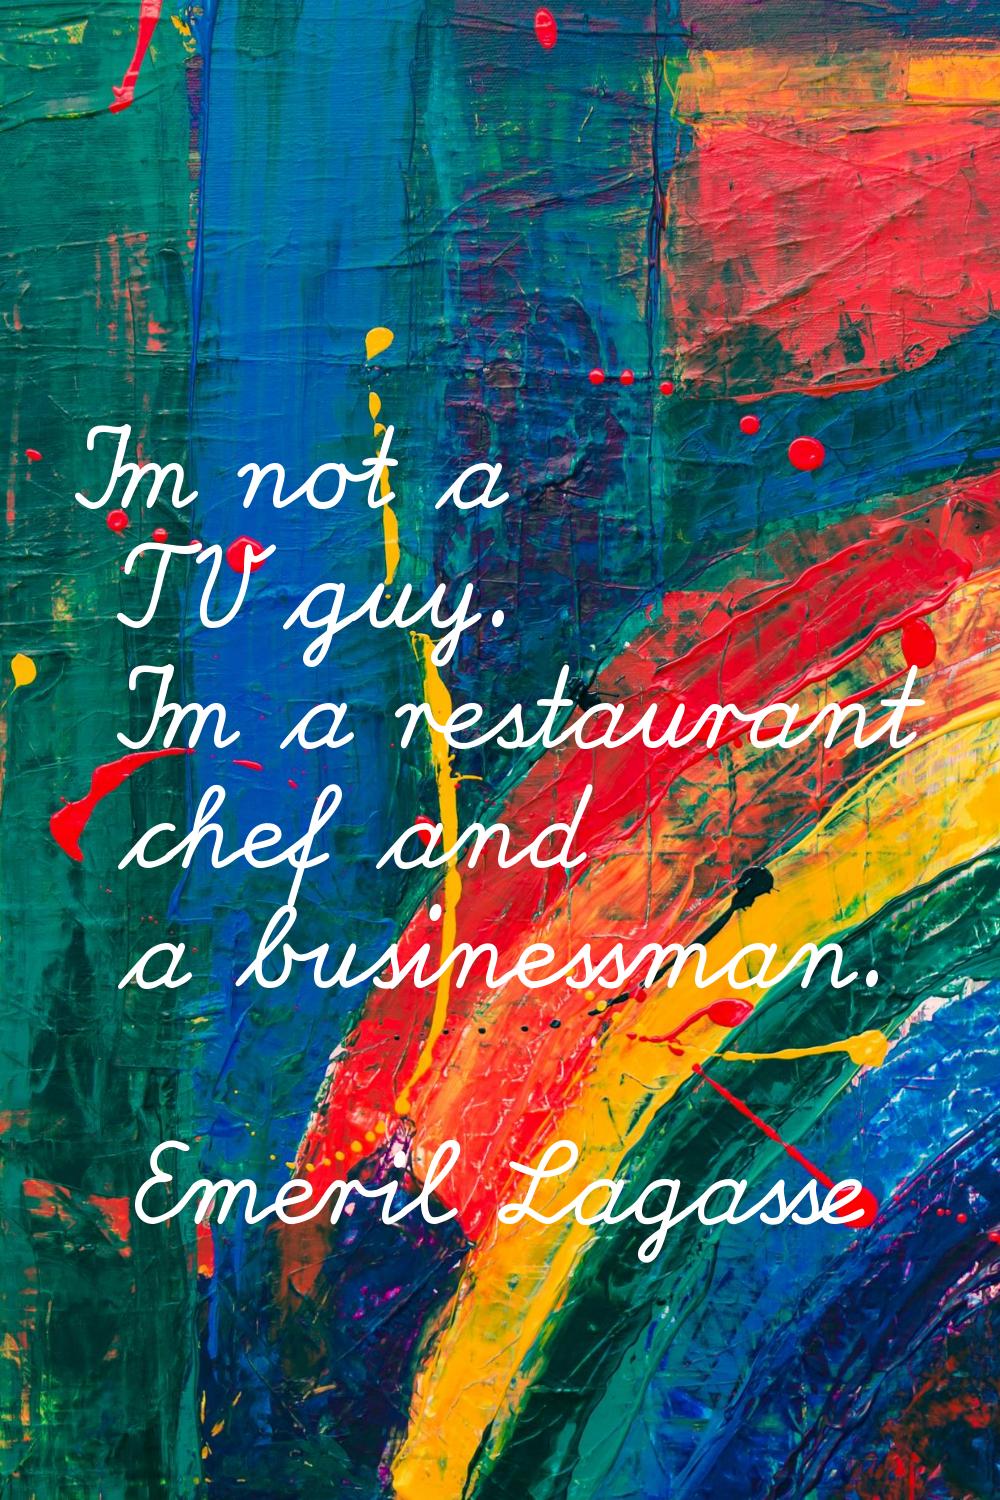 I'm not a TV guy. I'm a restaurant chef and a businessman.